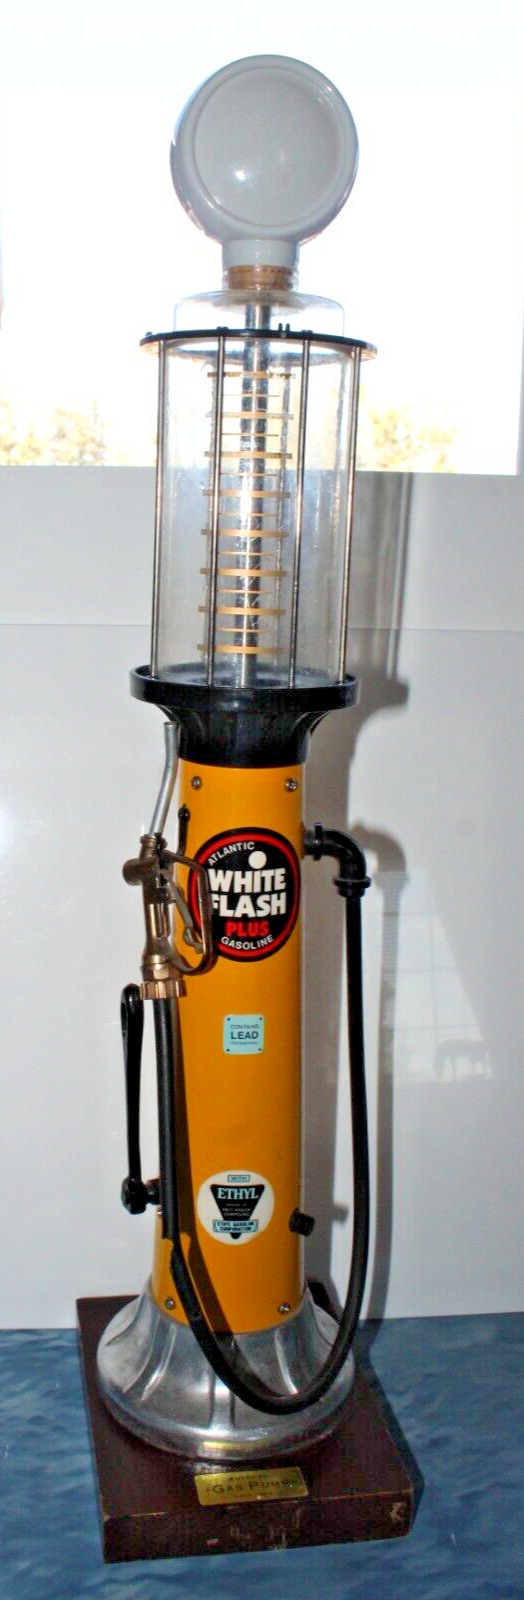 Vintage Atlantic White Flash Plus Gasoline Pump Circa 1920 Liquid Dispenser 20.5